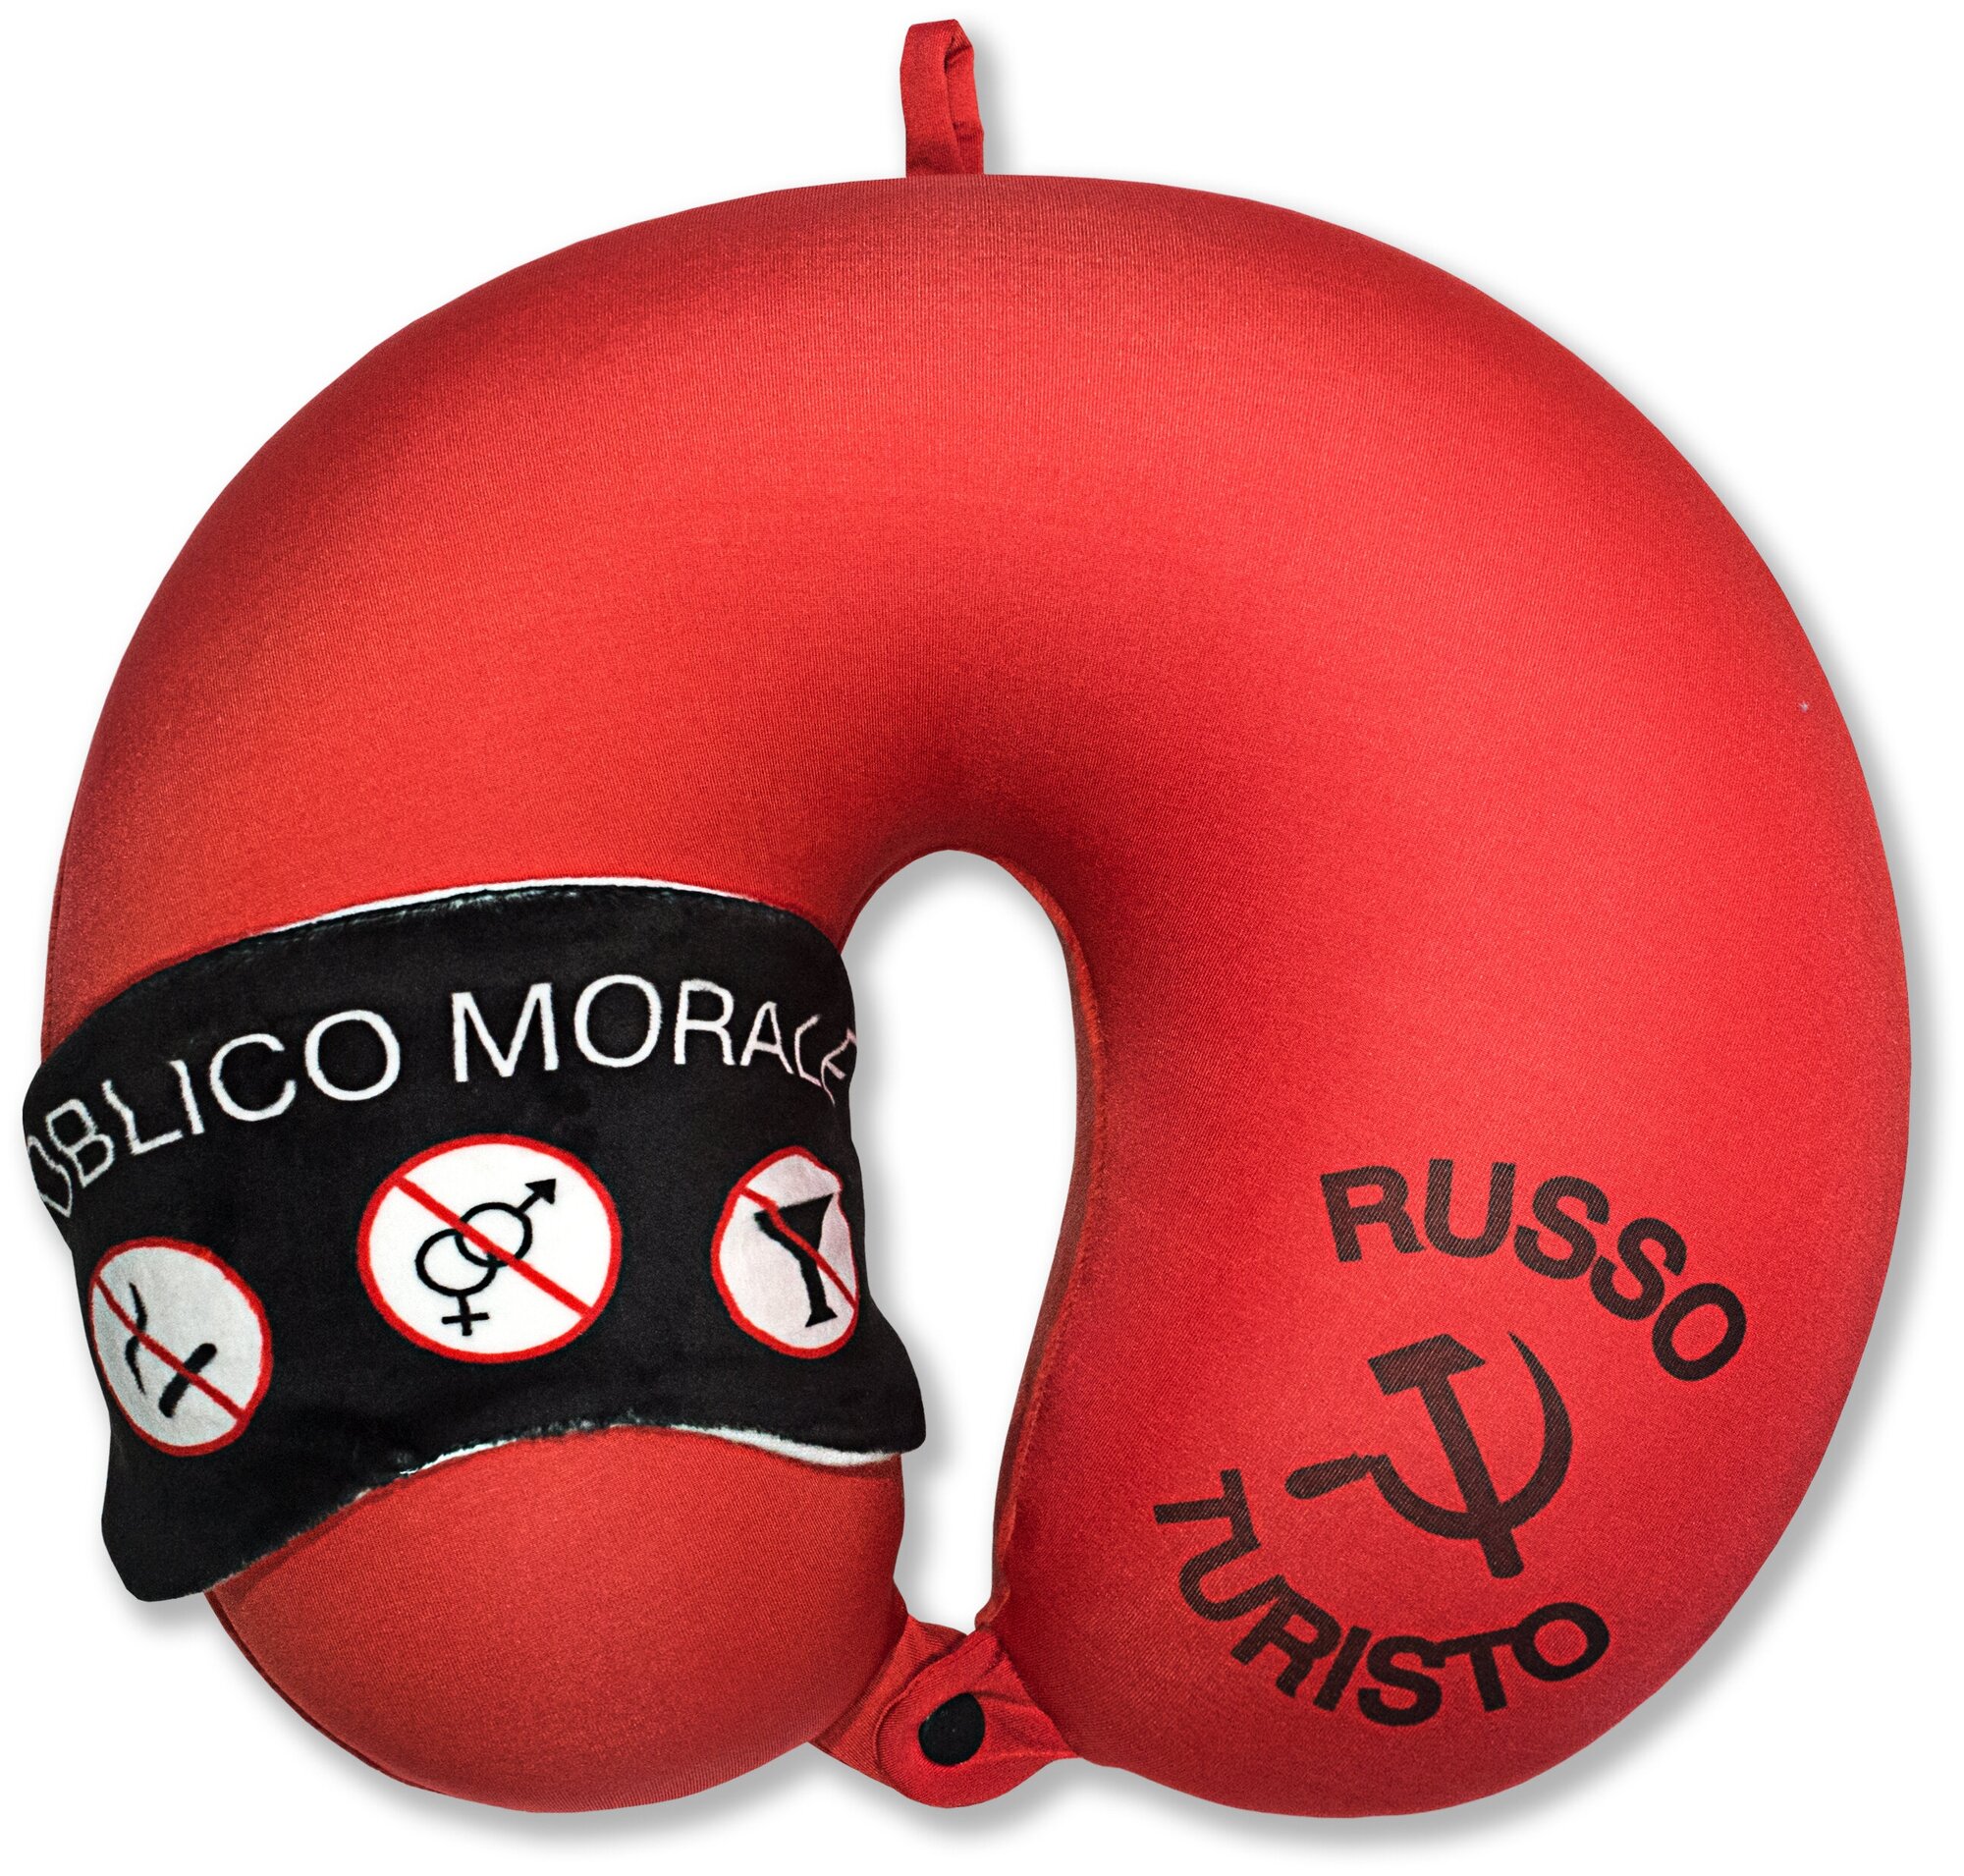 Подушка для шеи антистресс с маской Штучки, к которым тянутся ручки Облико Морале, красная с черной маской - фотография № 3